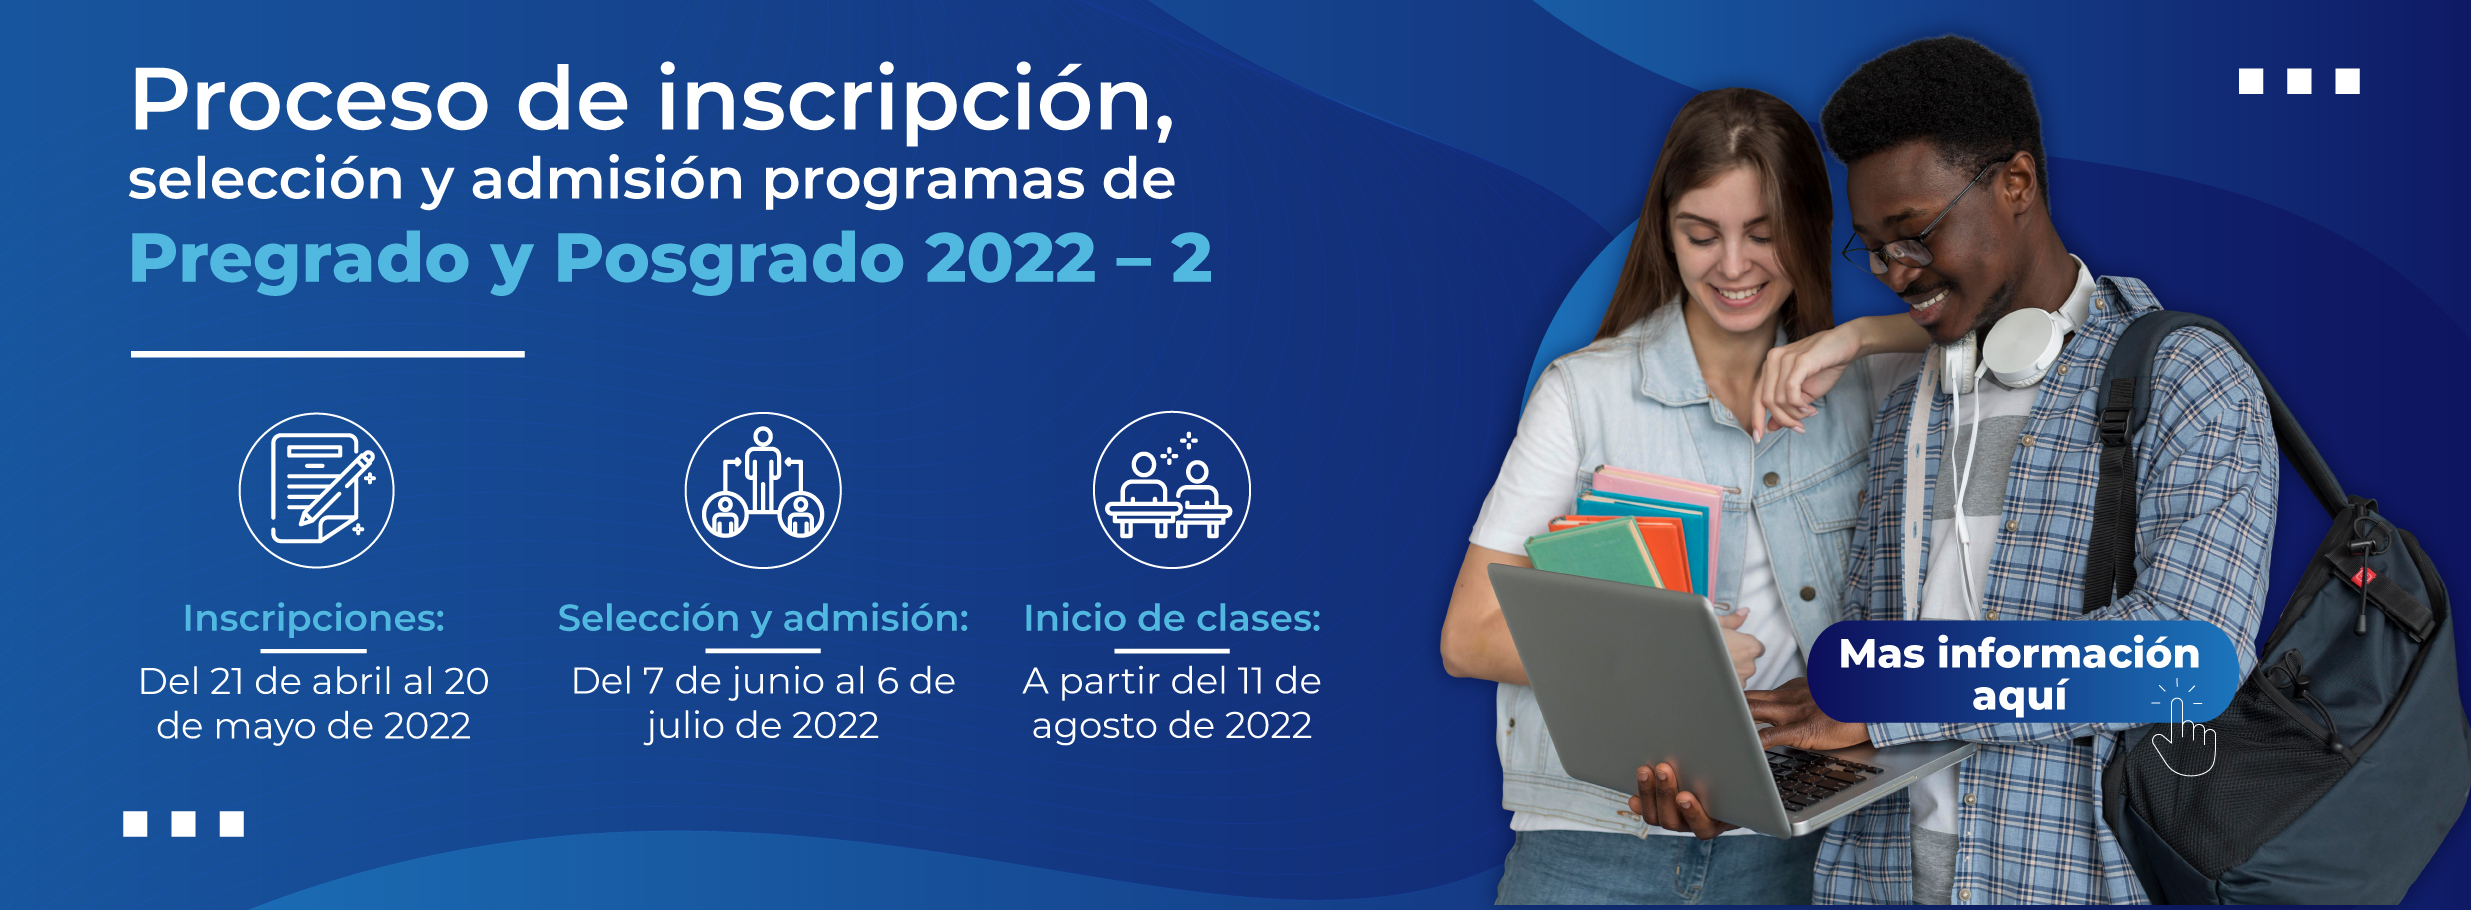 Proceso de inscripción, selección y admisión programas de Pregrado y Posgrado 2022